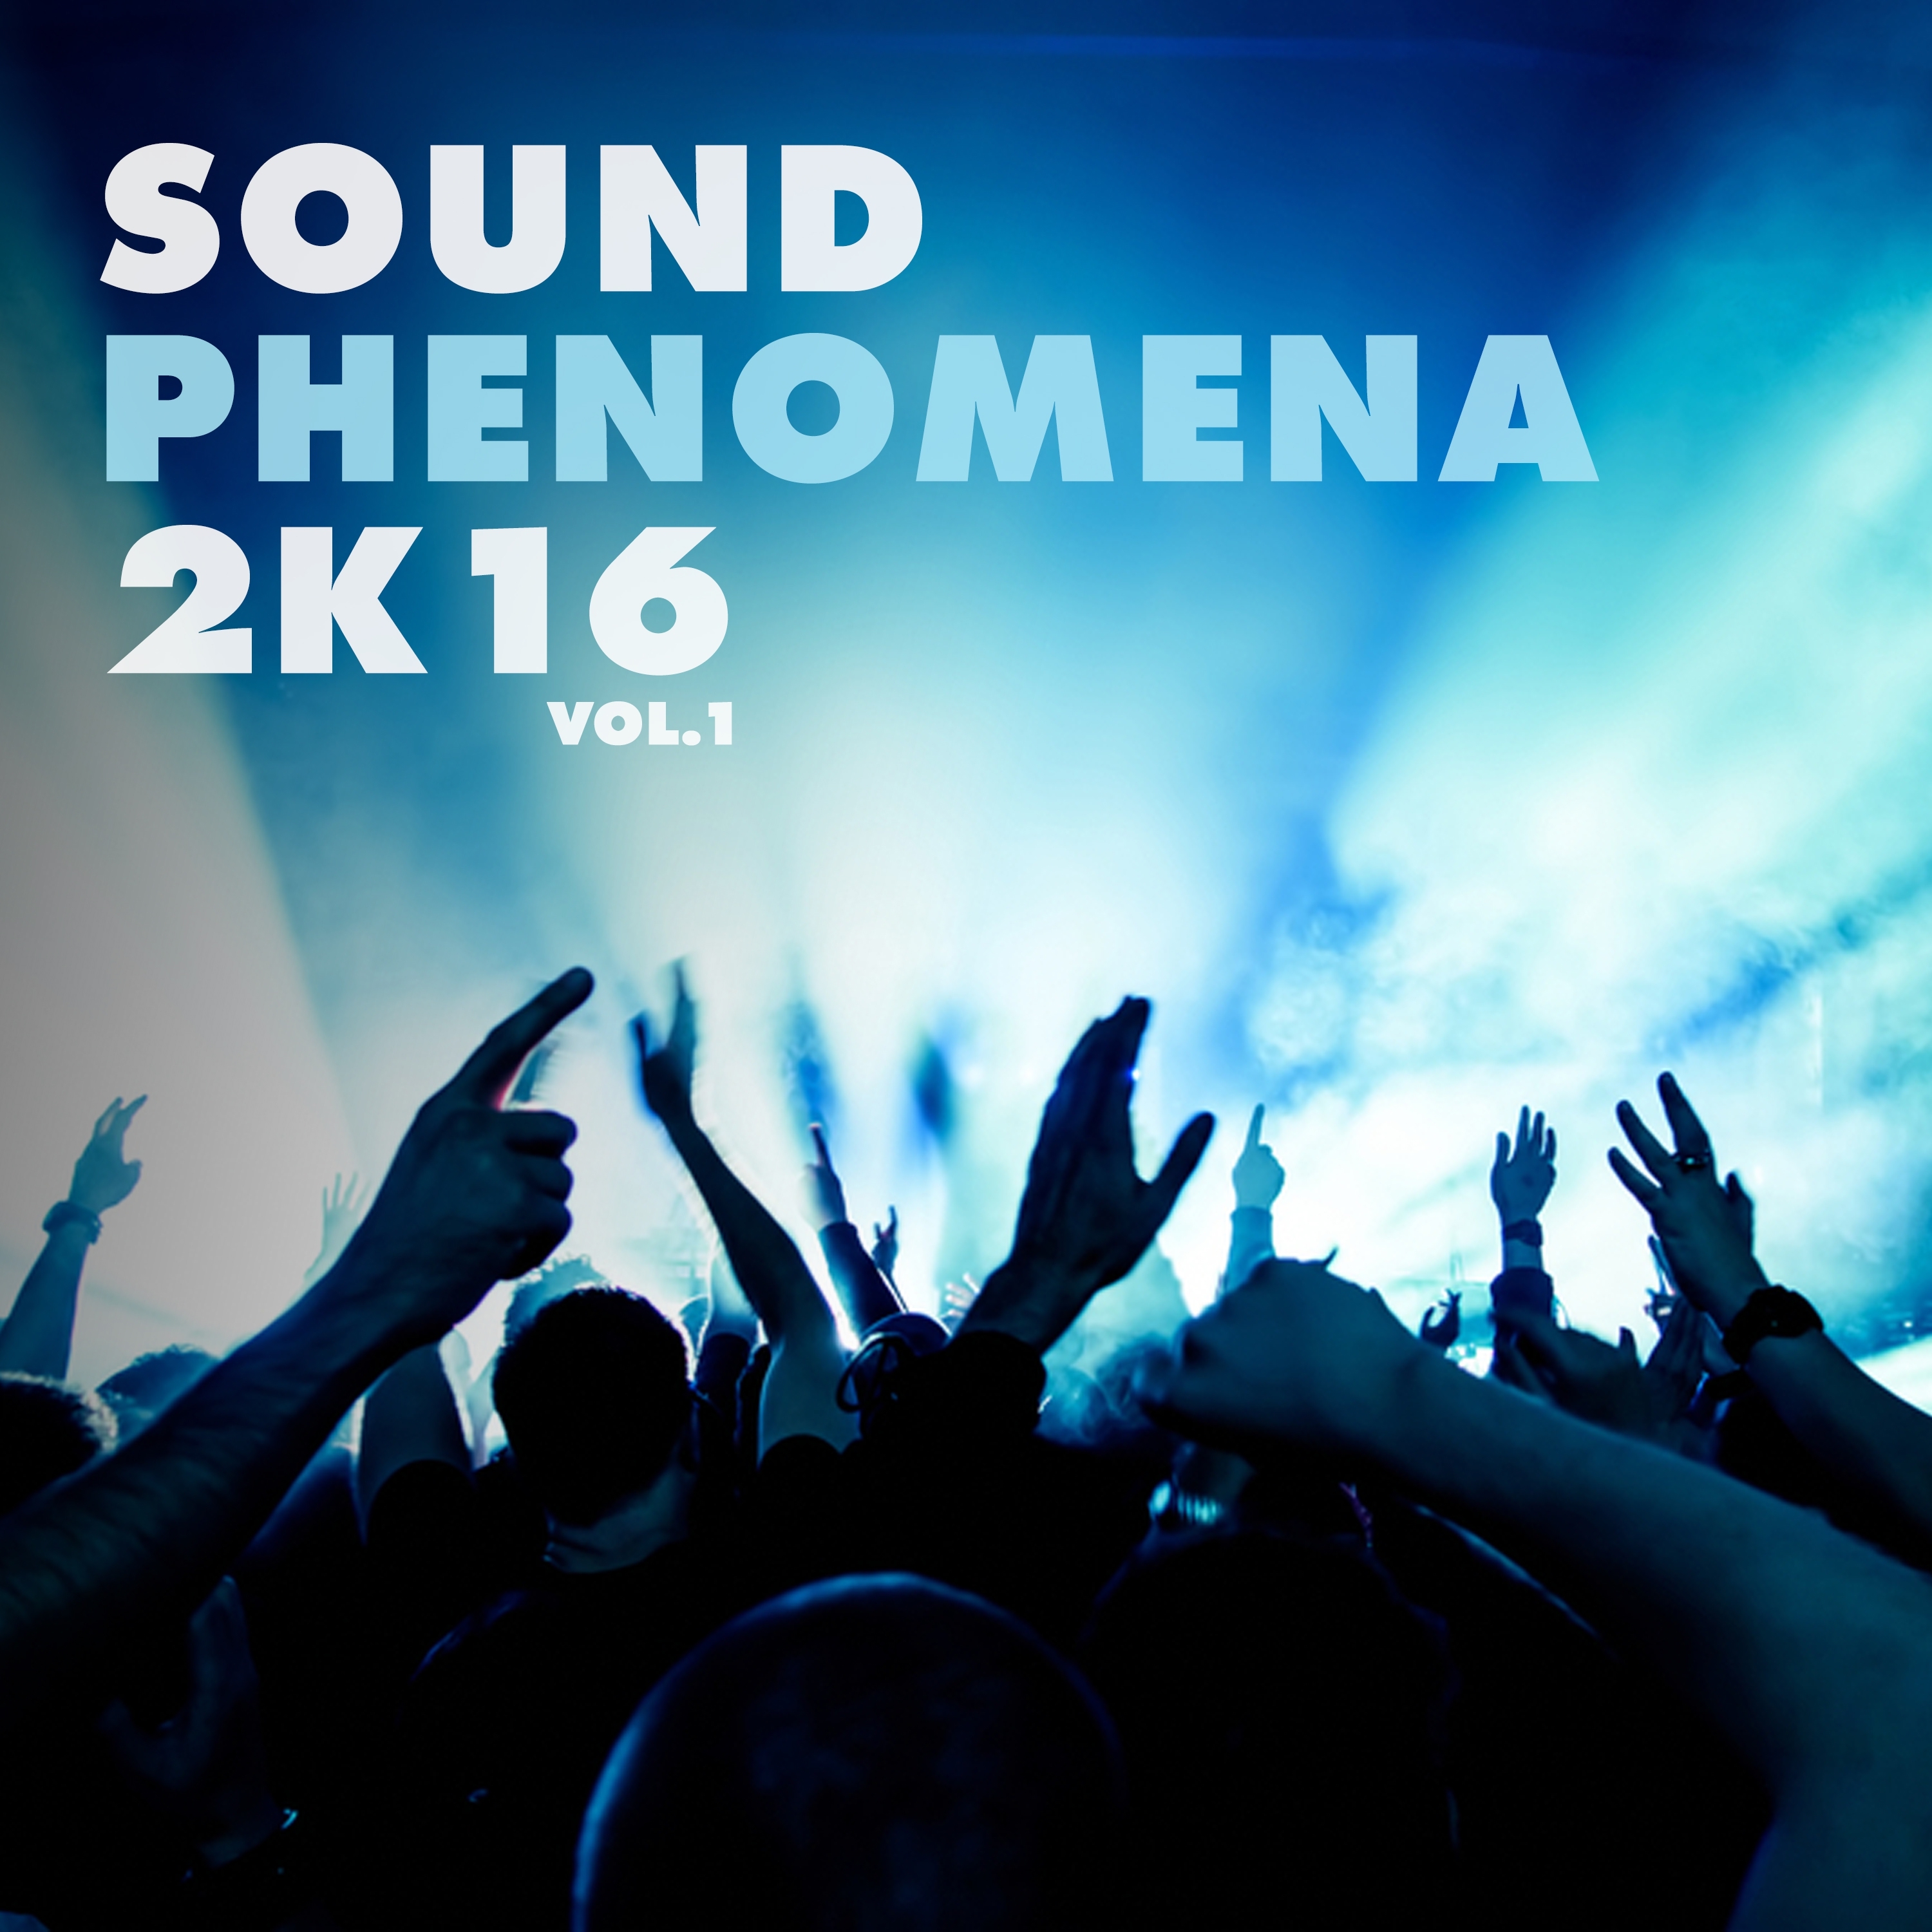 Sound Phenomena 2K16, Vol. 1